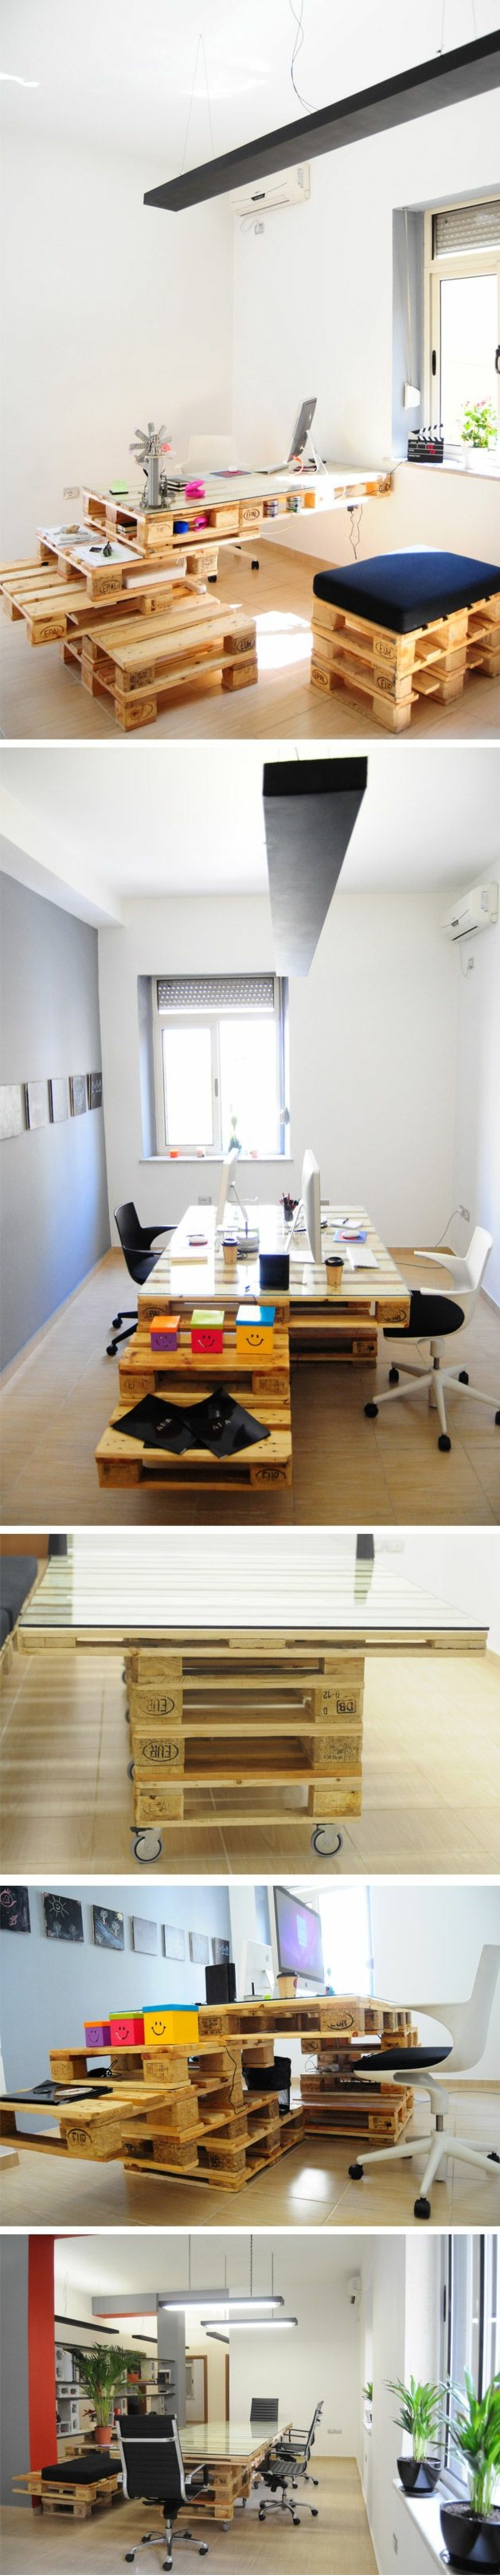 γραφείο οικοδομήσουμε τον εαυτό σας diy γραφείο ξύλινες παλέτες hypeness.com.br